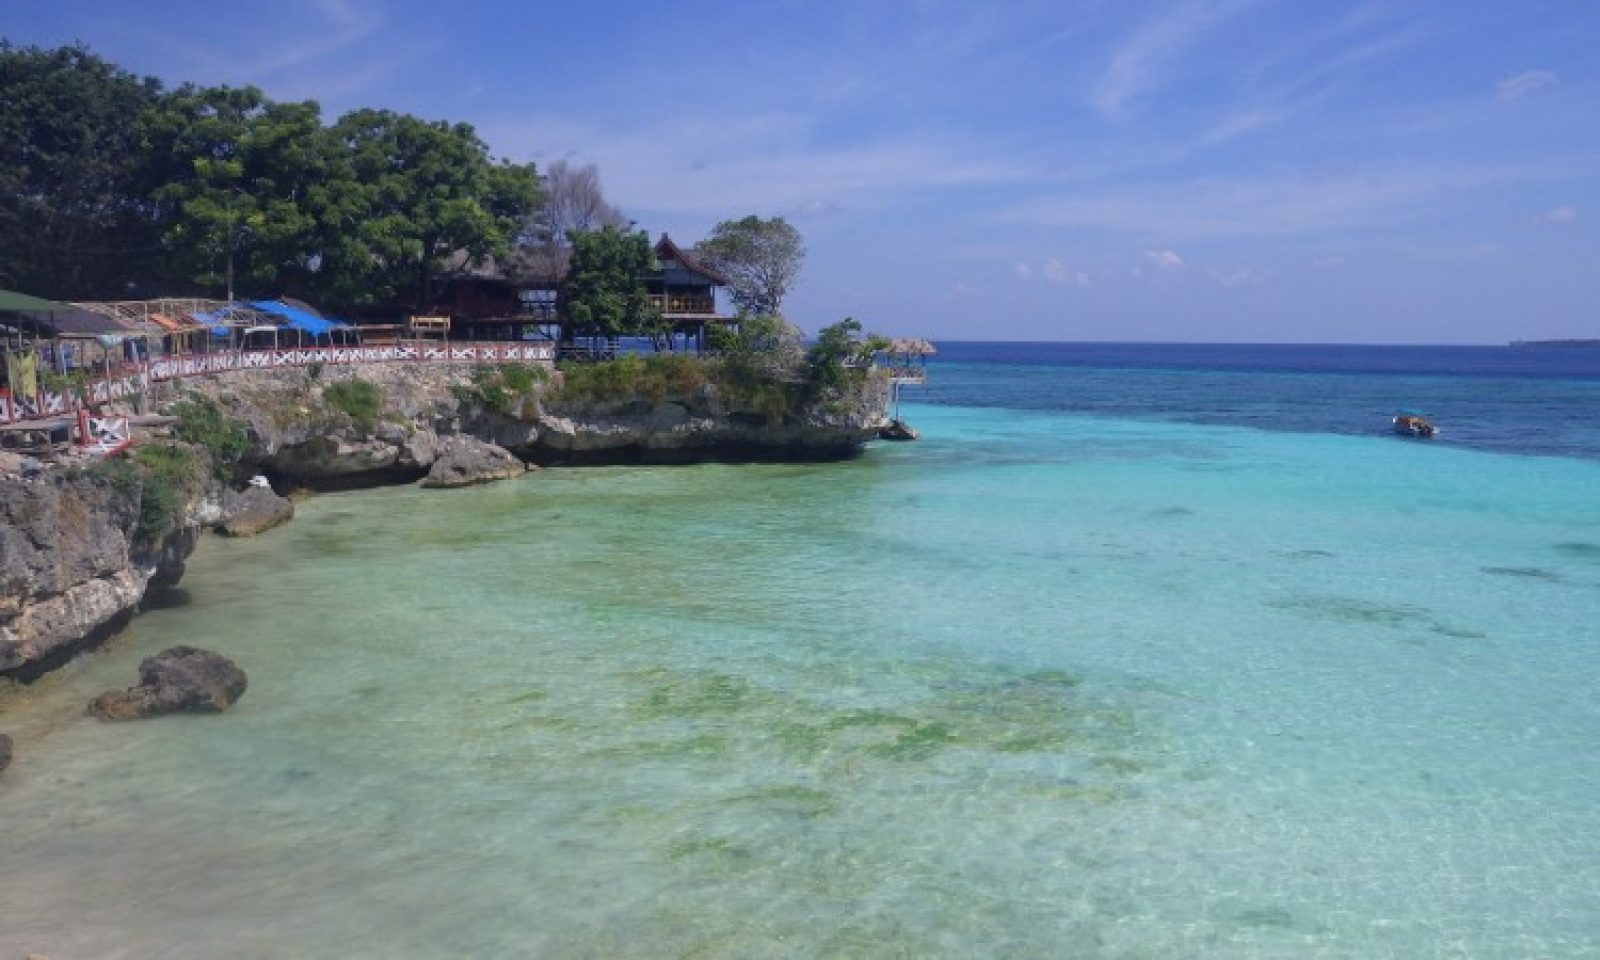 10 Wisata Pantai Di Sulawesi Selatan Yang Paling Indah